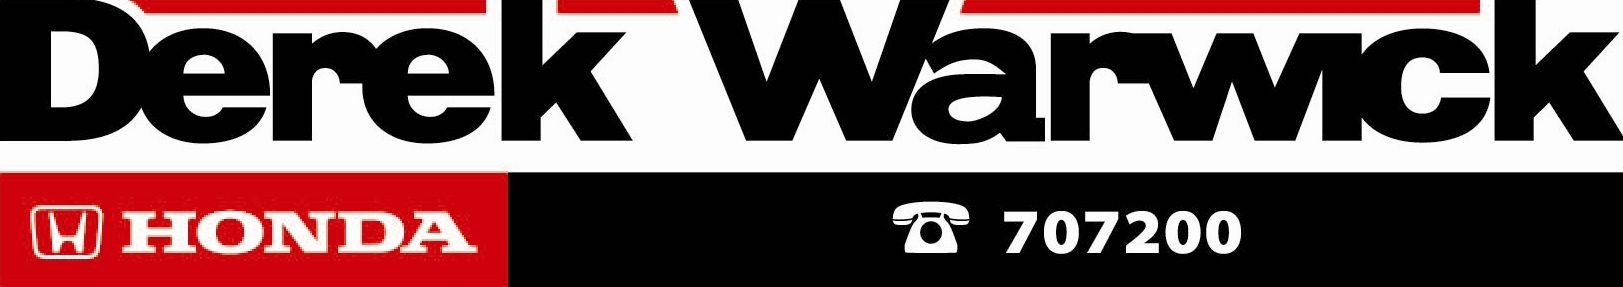 Derek Warwick Logo (1)